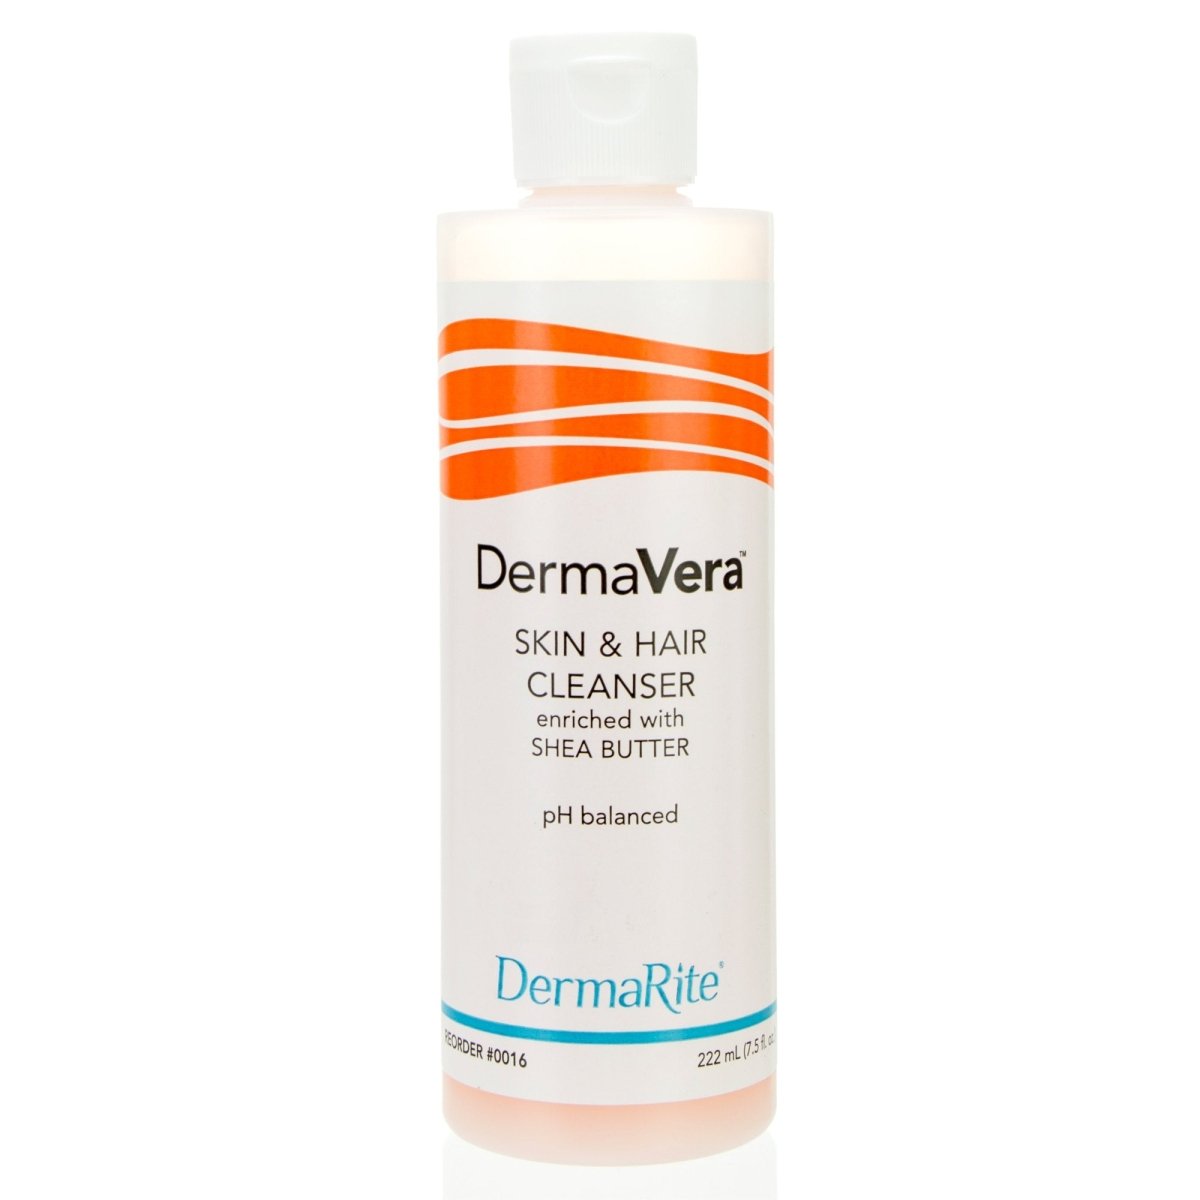 Dermavera Skin & Hair Cleanser